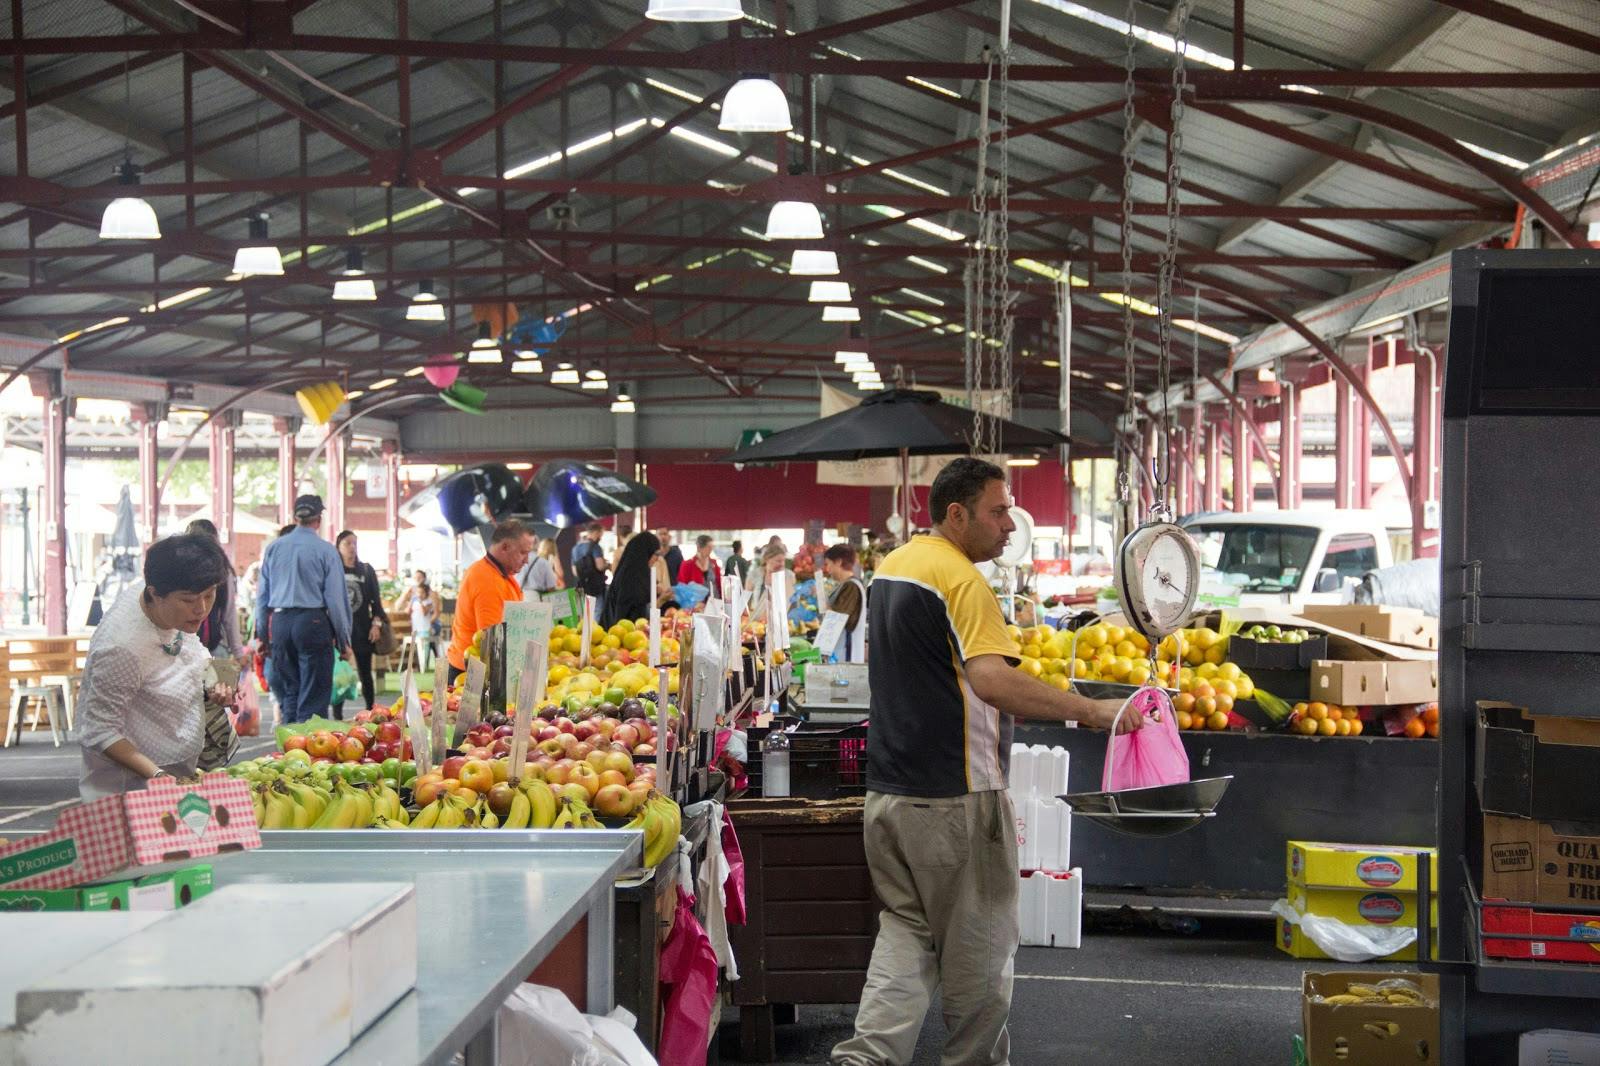 Image - Queen Victoria Market